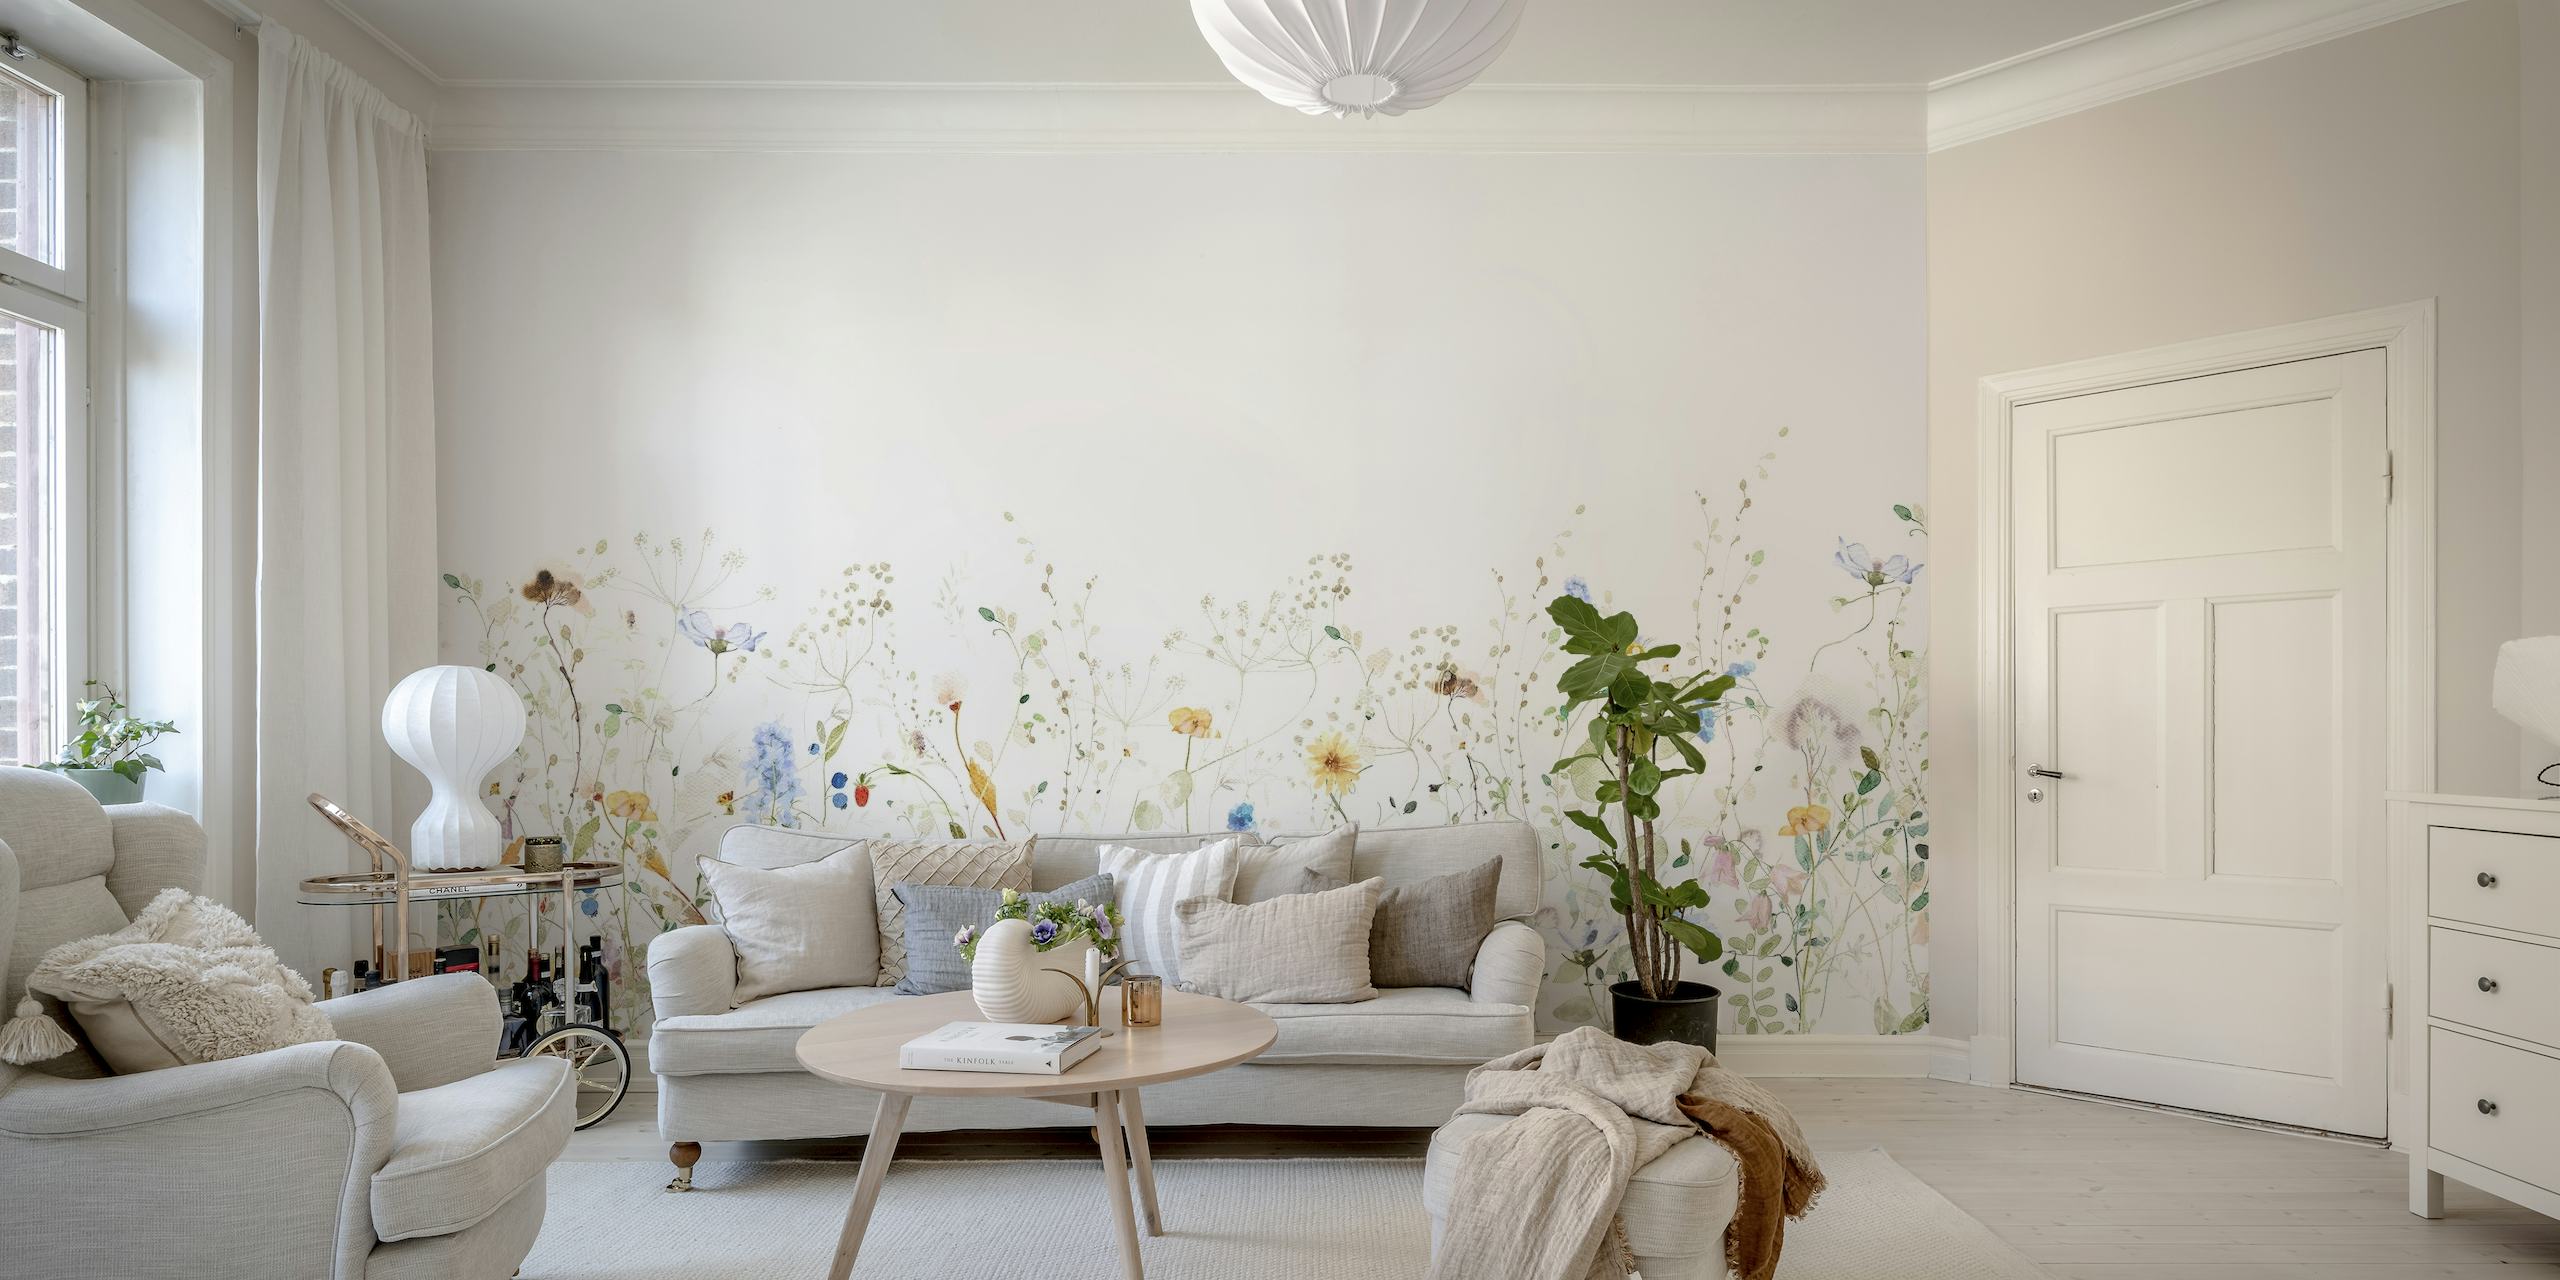 Coloridas flores silvestres delicadamente dispersas sobre un fondo claro, creando un exuberante mural de pared similar a un prado.